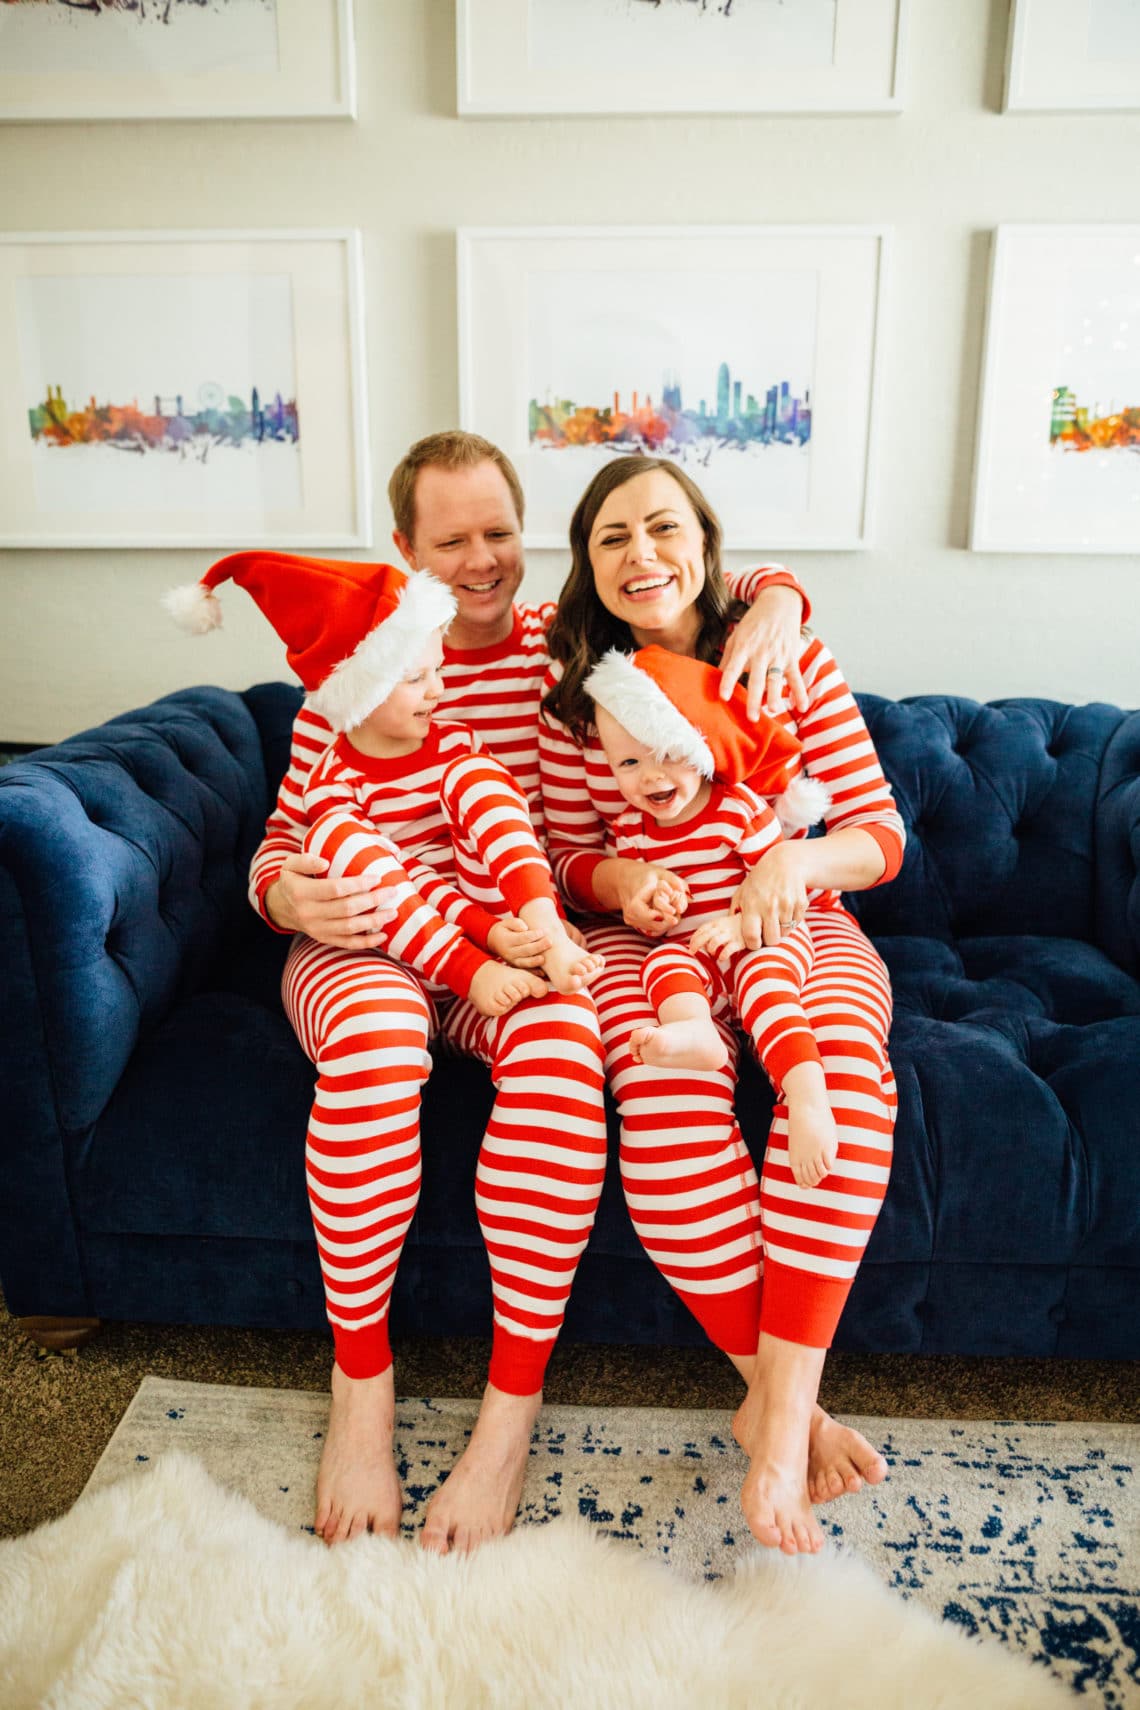 Matching Family Christmas Pajamas